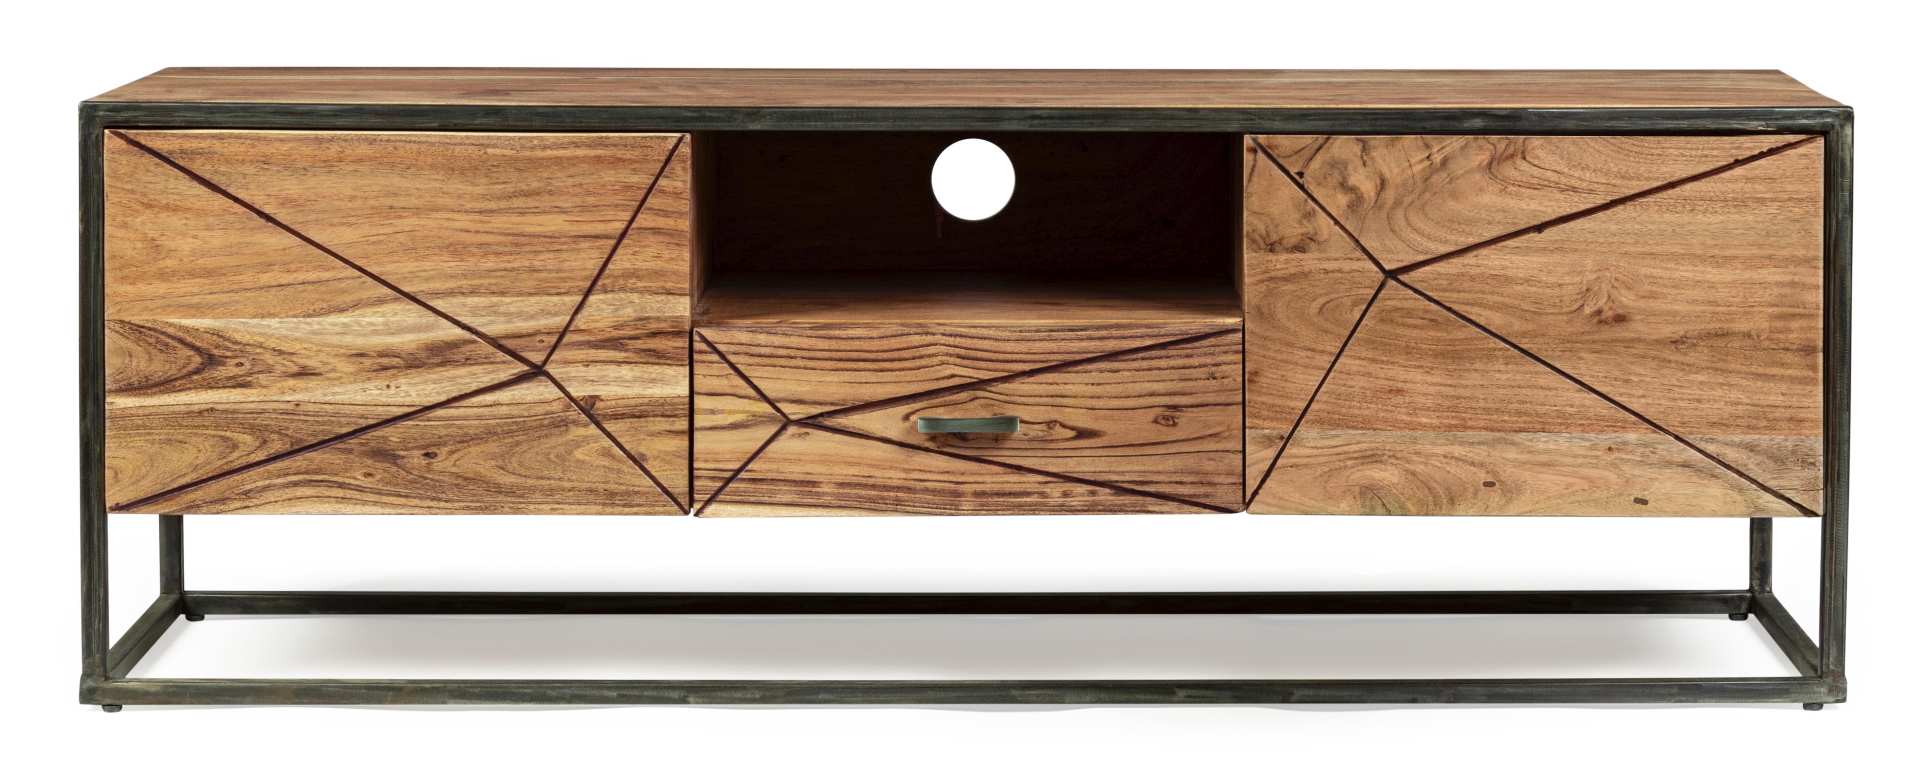 Das TV Board Egon überzeugt mit seinem modernen Design. Gefertigt wurde es aus Akazienholz, welches einen natürlichen Farbton besitzt. Das Gestell ist aus Metall und hat eine schwarze Farbe. Das TV Board verfügt über zwei Türen und eine Schublade. Die Bre